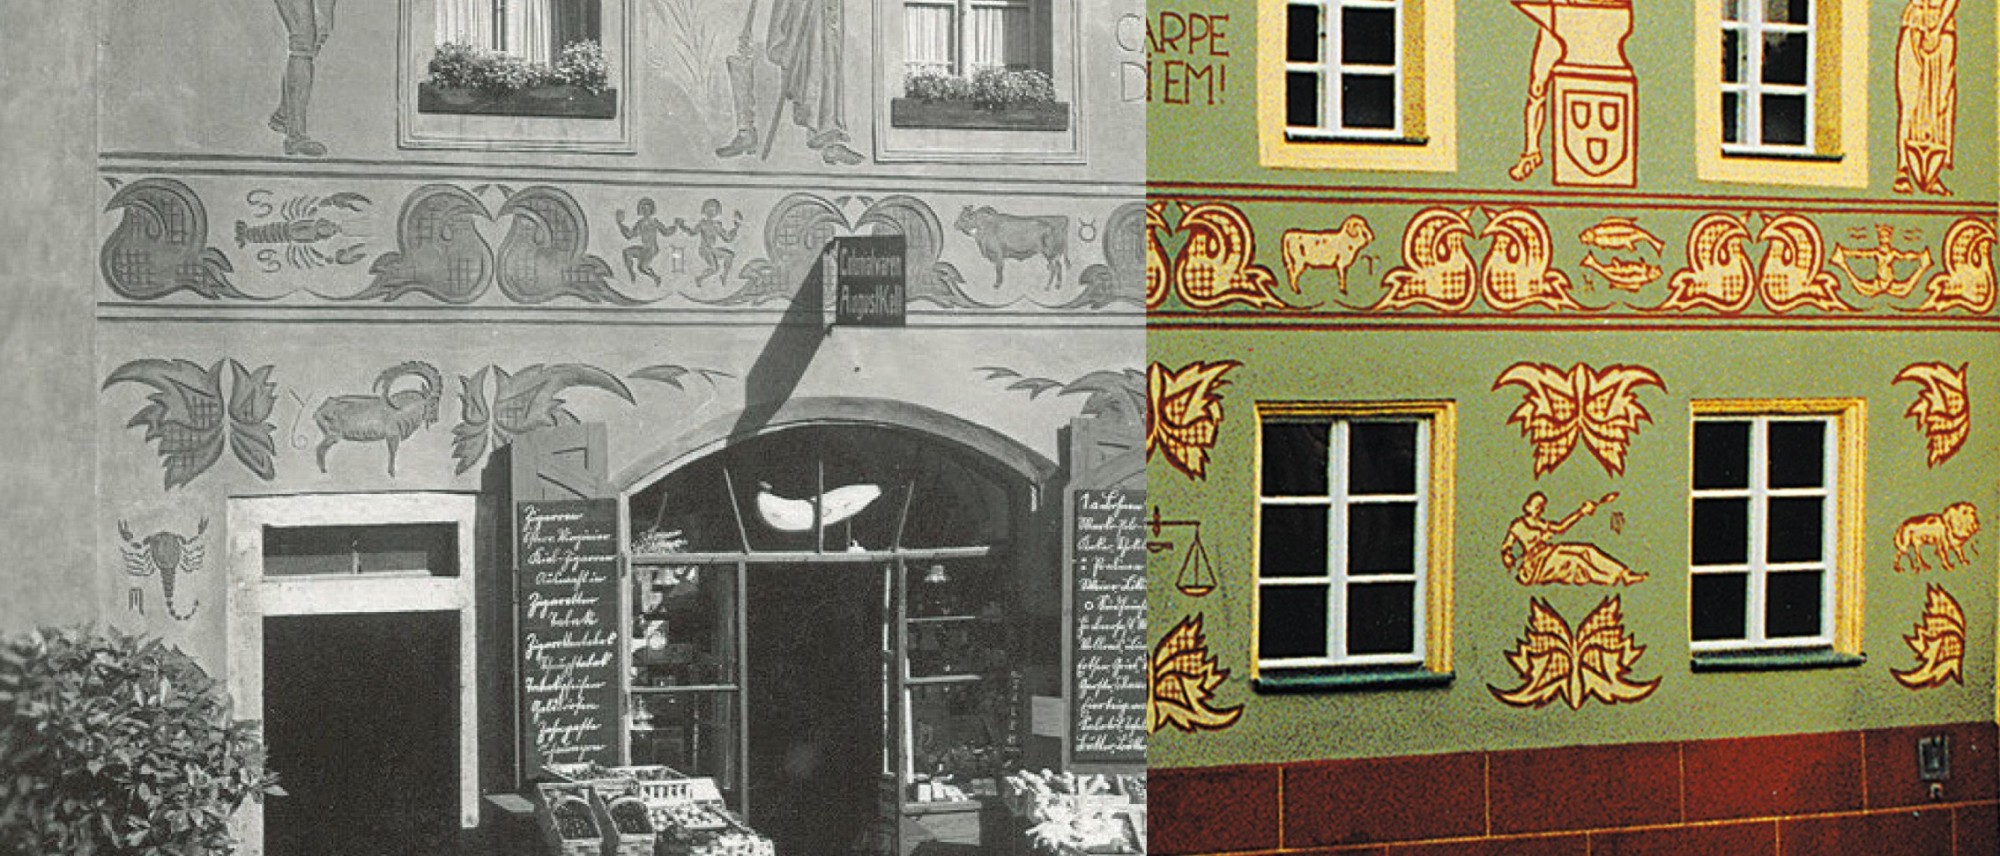 Das Bild stellt Fotos der Fassade des Schmidt-Hauses in schwarz-weiß und Farbe gegenüber. Die frühere Aufnahme zeigt den Zugang zu einem Gemischtwarenladen.